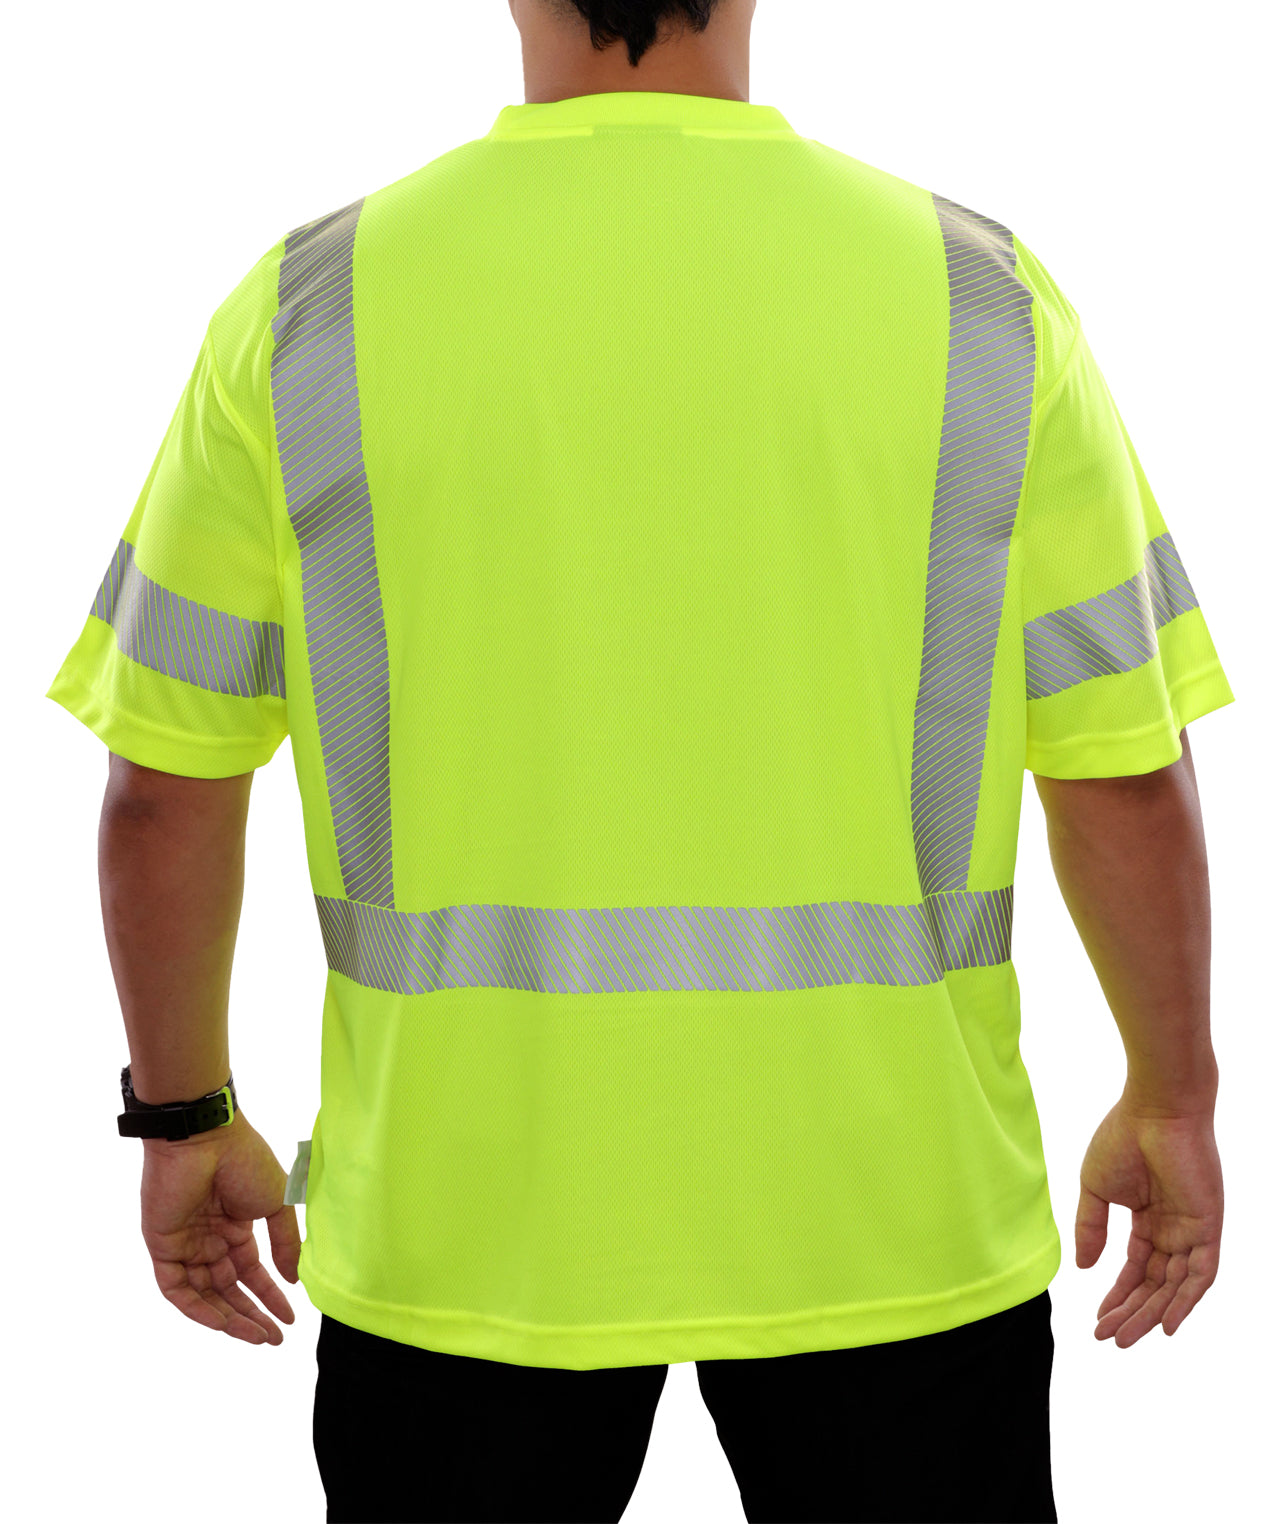 104CTLM Hi-Vis Lime Birdseye Pocket Safety T-Shirt with Comfort Trim by 3MTM